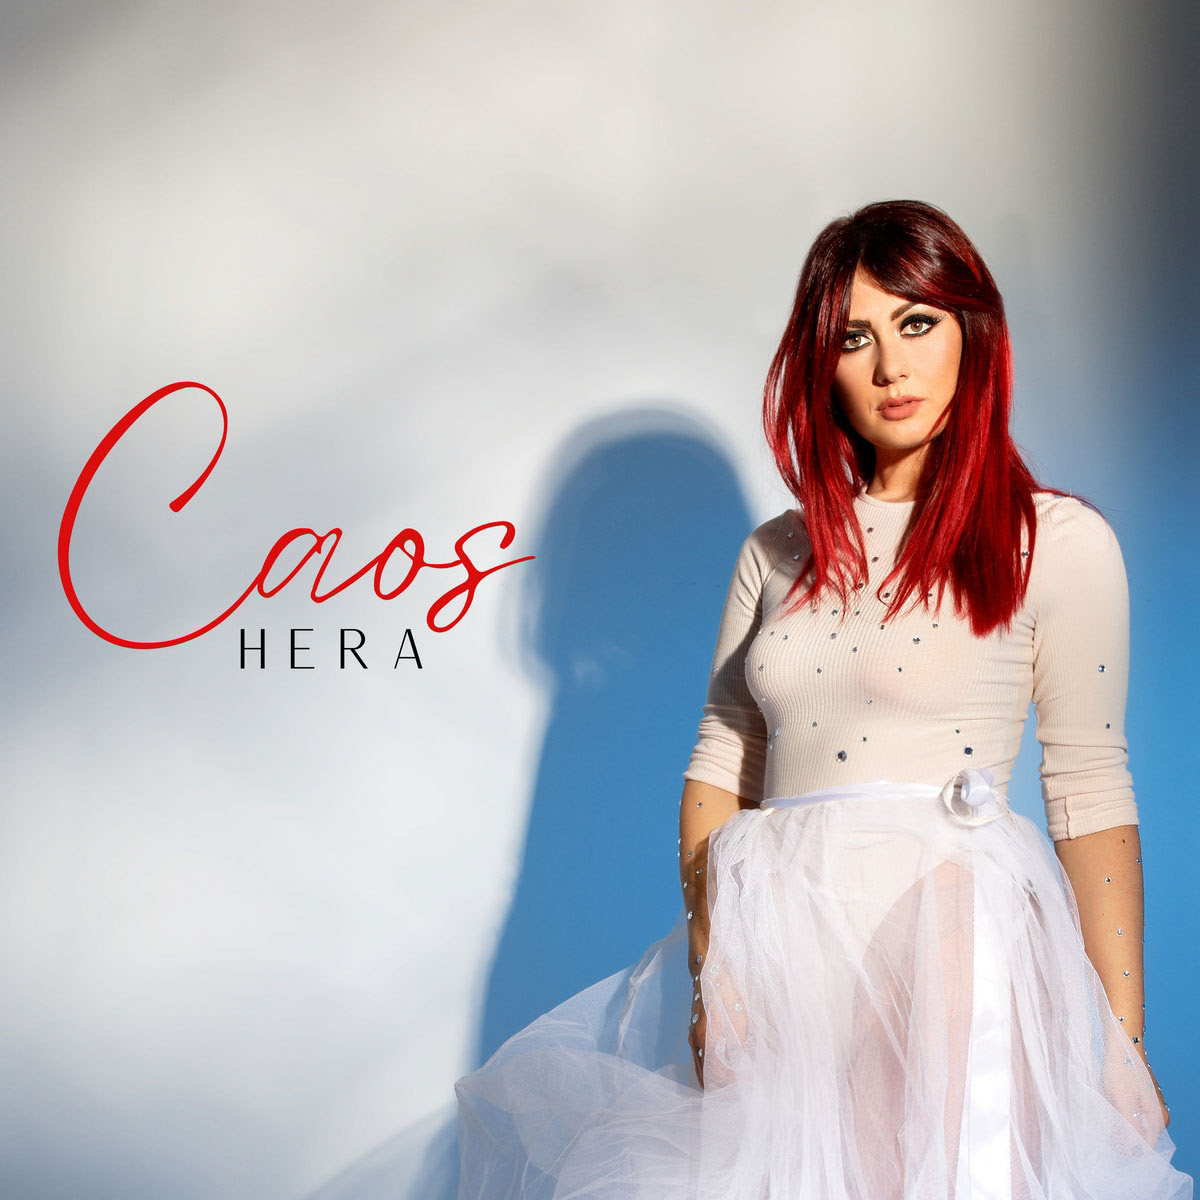 Caos è il nuovo singolo di Heart, in radio dal 5 maggio